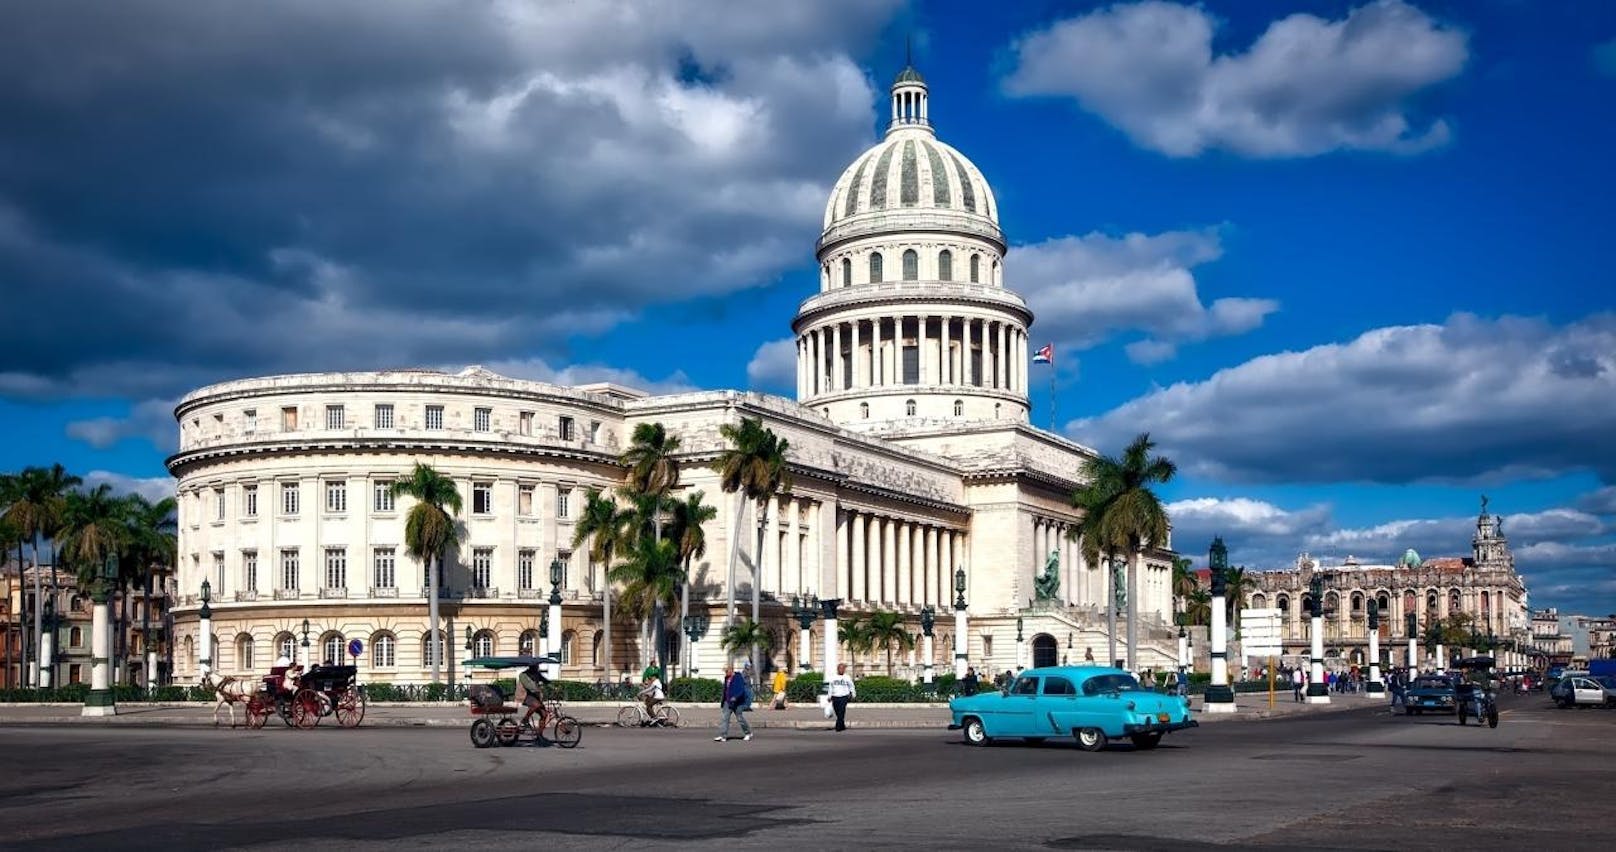 <b>Das kubanische Kapitol:</b>
Reisende, die im kubanischen Havanna auf ein weißes Gebäude mit einer großen Kuppel und Säulengängen stoßen, können sich zu Recht an das Kapitol in Washington D.C. erinnert fühlen.